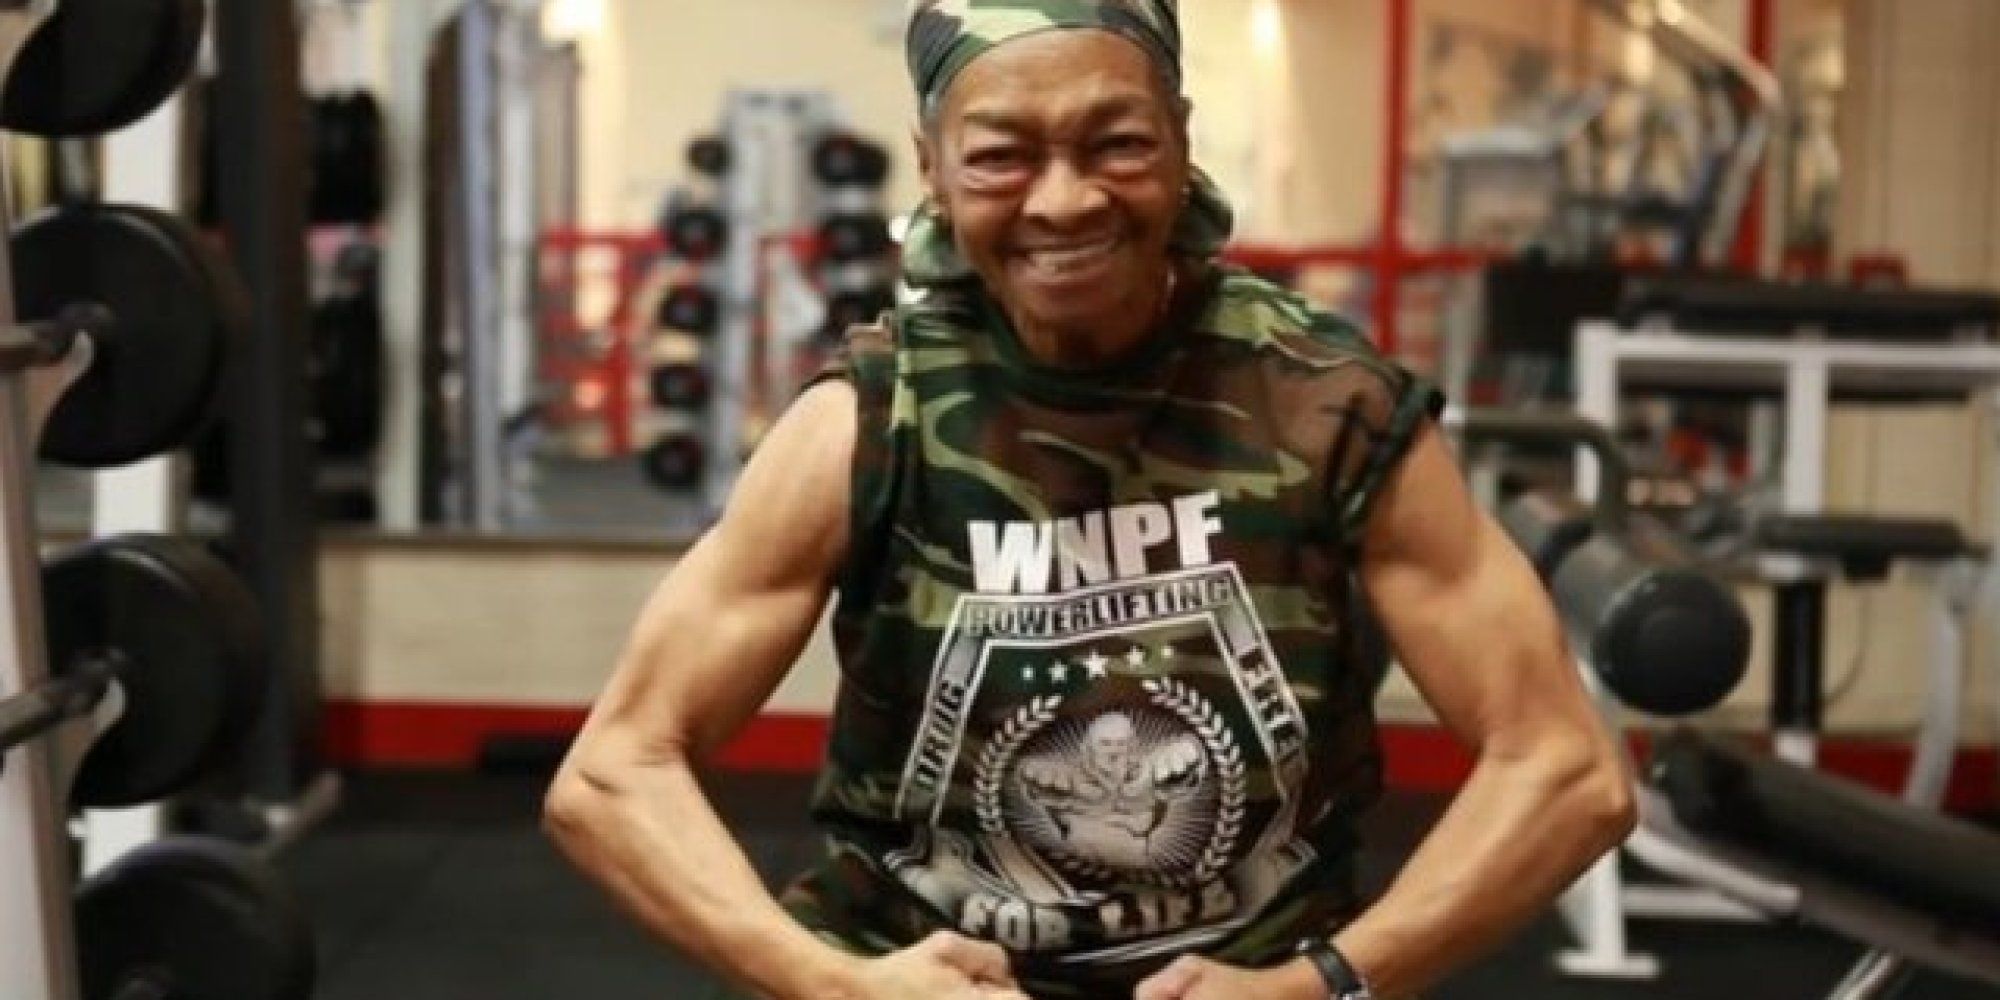 Willie Murphy, campionessa body builder a 77 anni